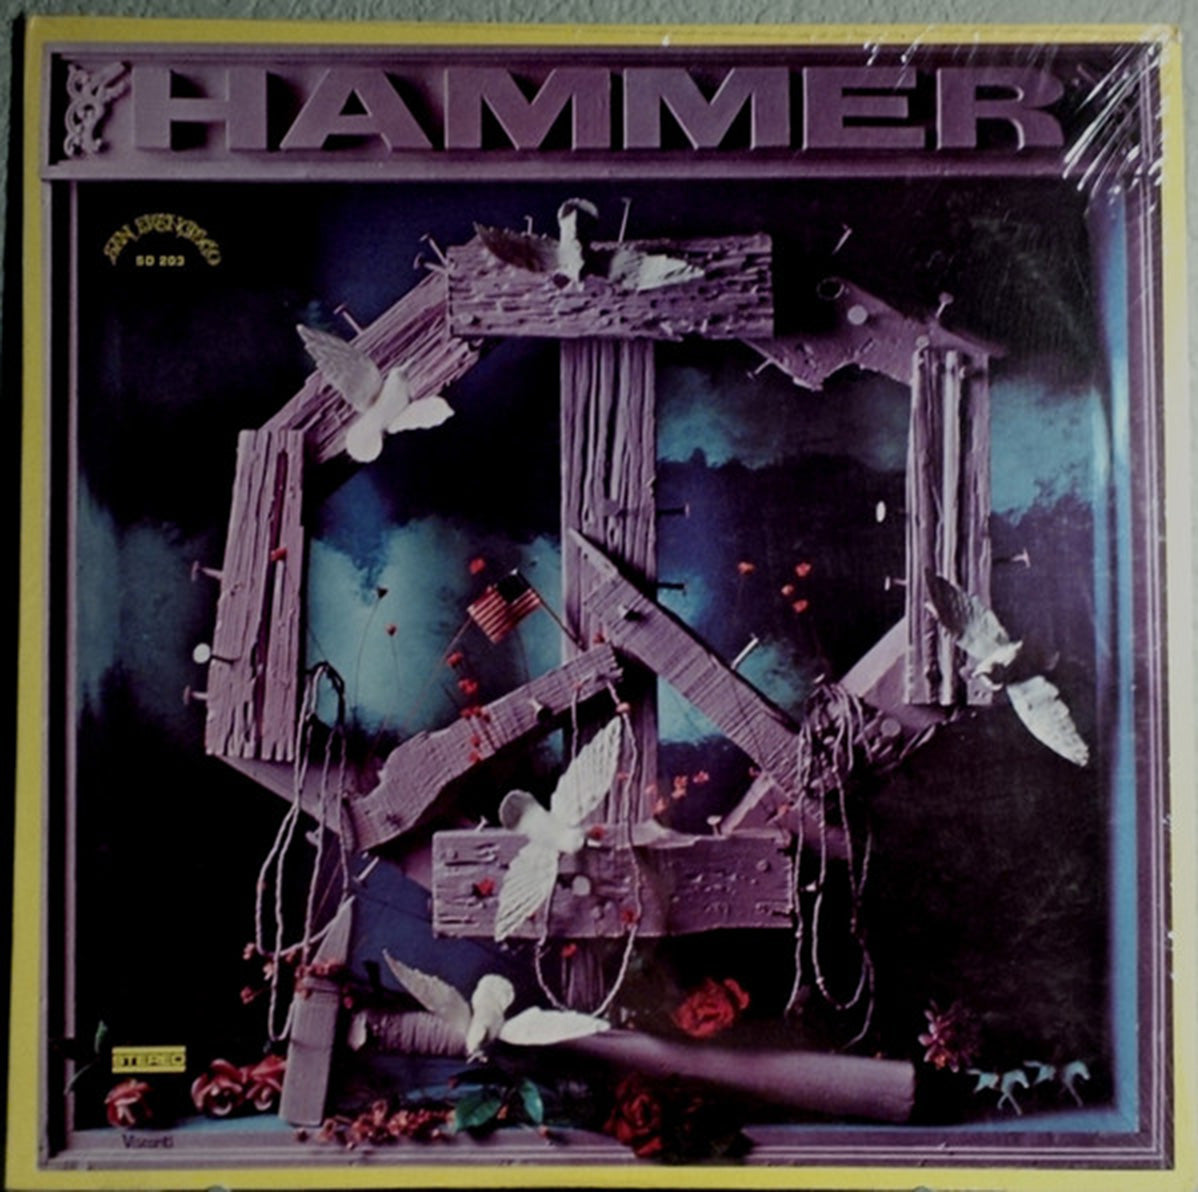 Hammer – Hammer - 1970 US Pressing